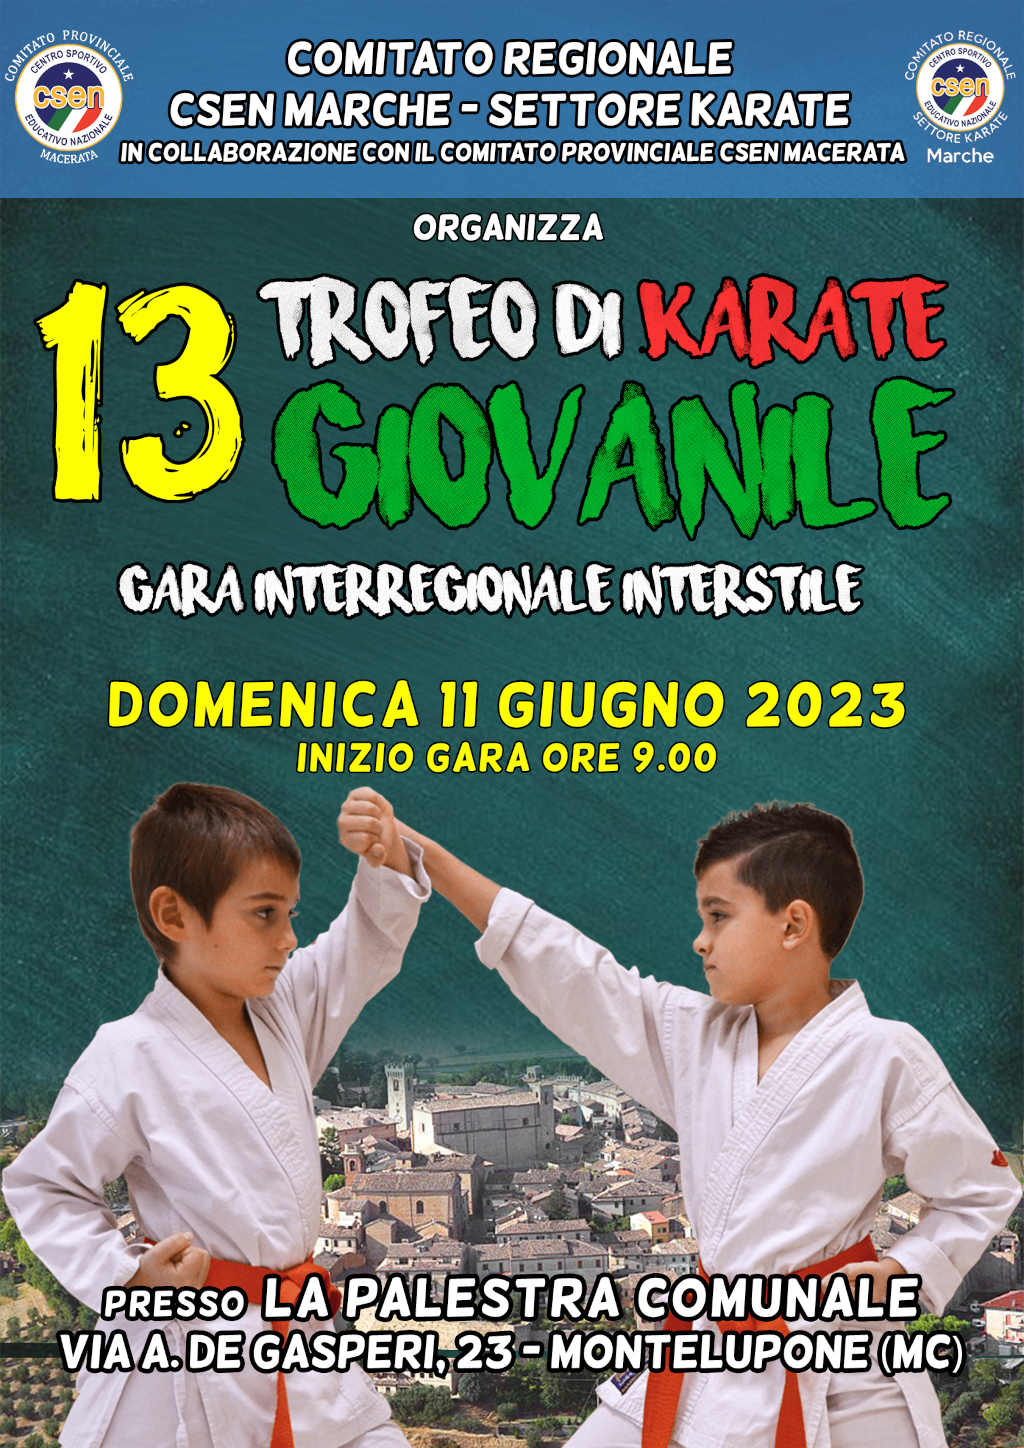 CR Marche Csen Karate: 13° Trofeo di Karate Giovanile – Montelupone, 11/06/2023.